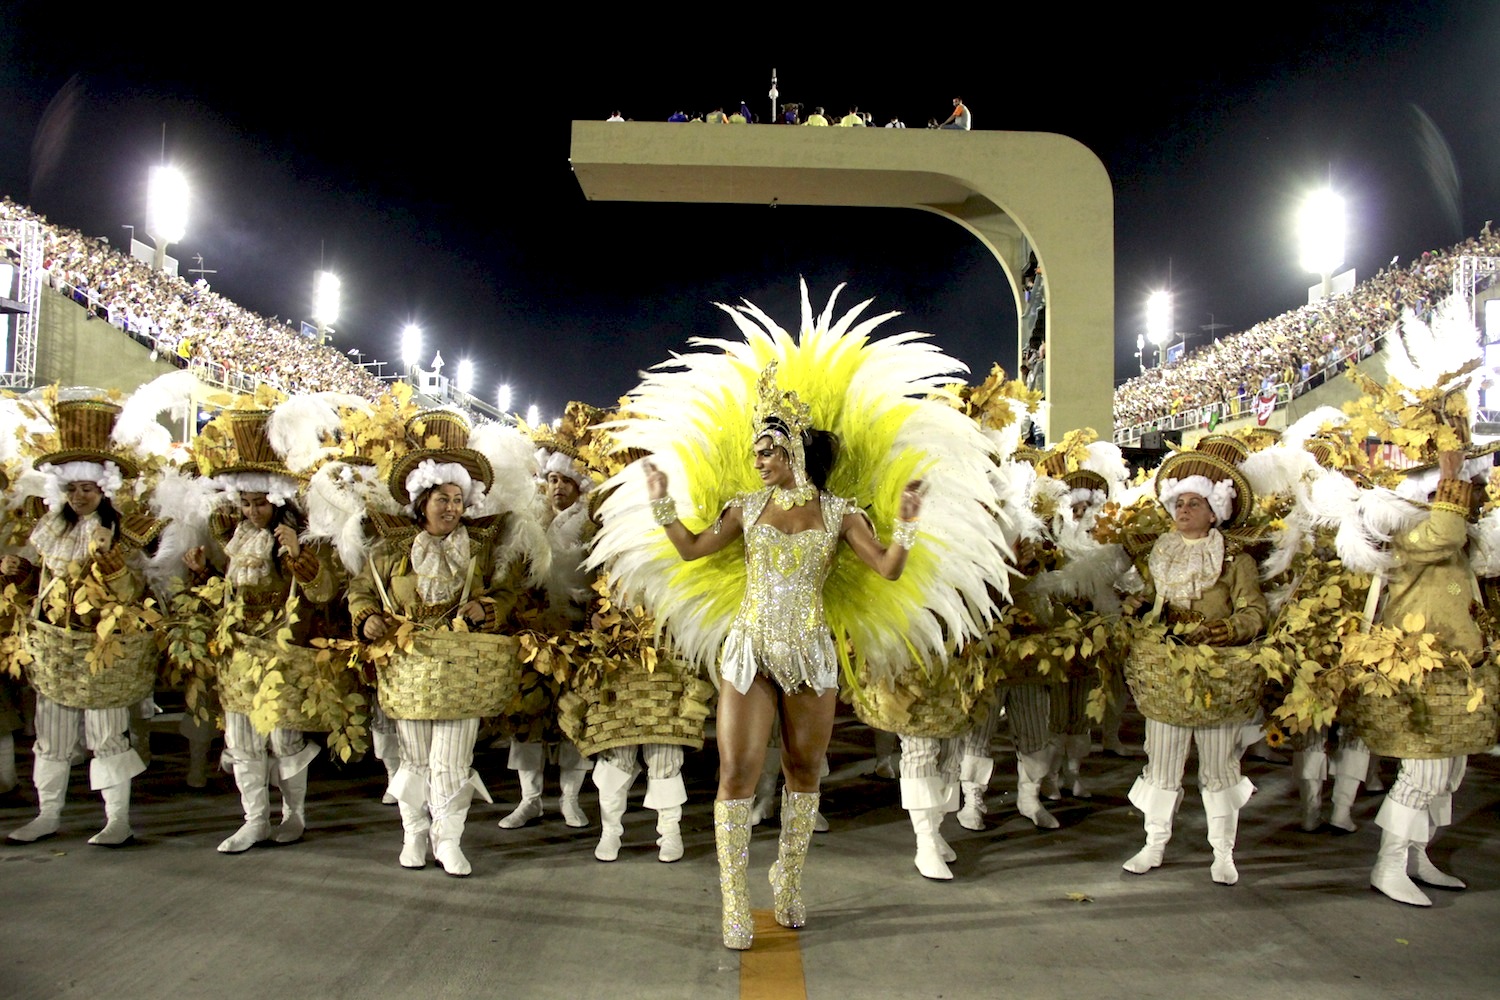 Carnival 2013 Arrives in Rio de Janeiro